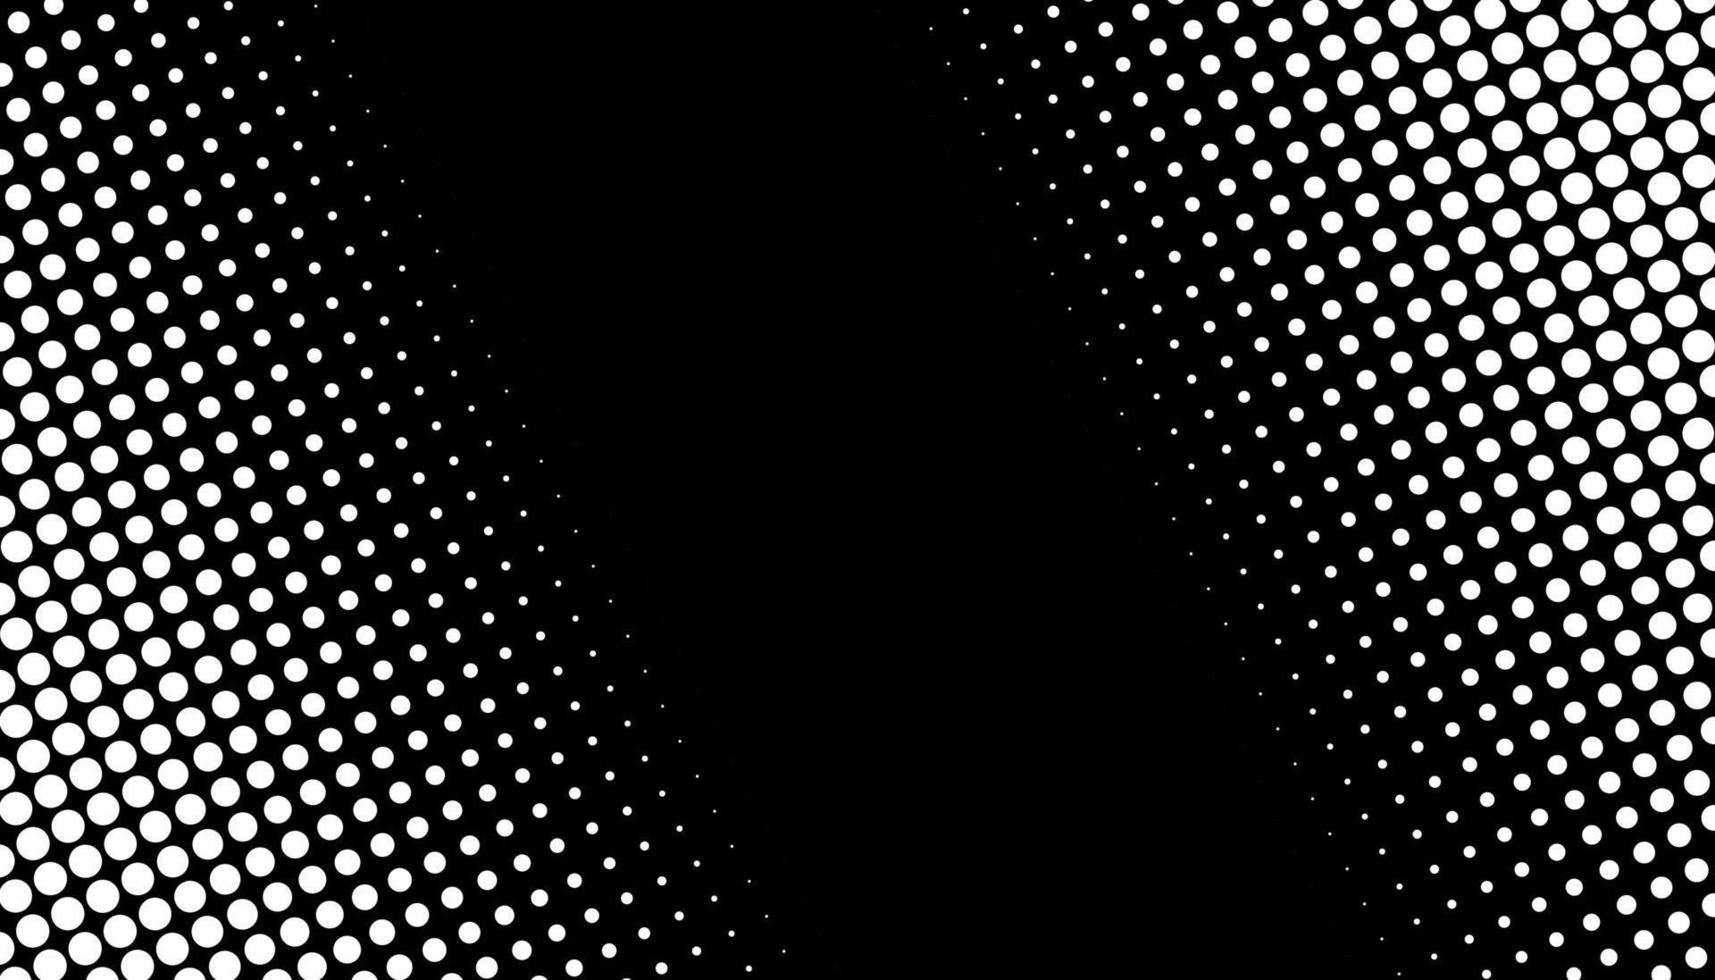 dégradé de demi-teintes rétro à partir de points. fond de demi-teinte monochrome blanc et noir avec des cercles. illustration vectorielle. vecteur